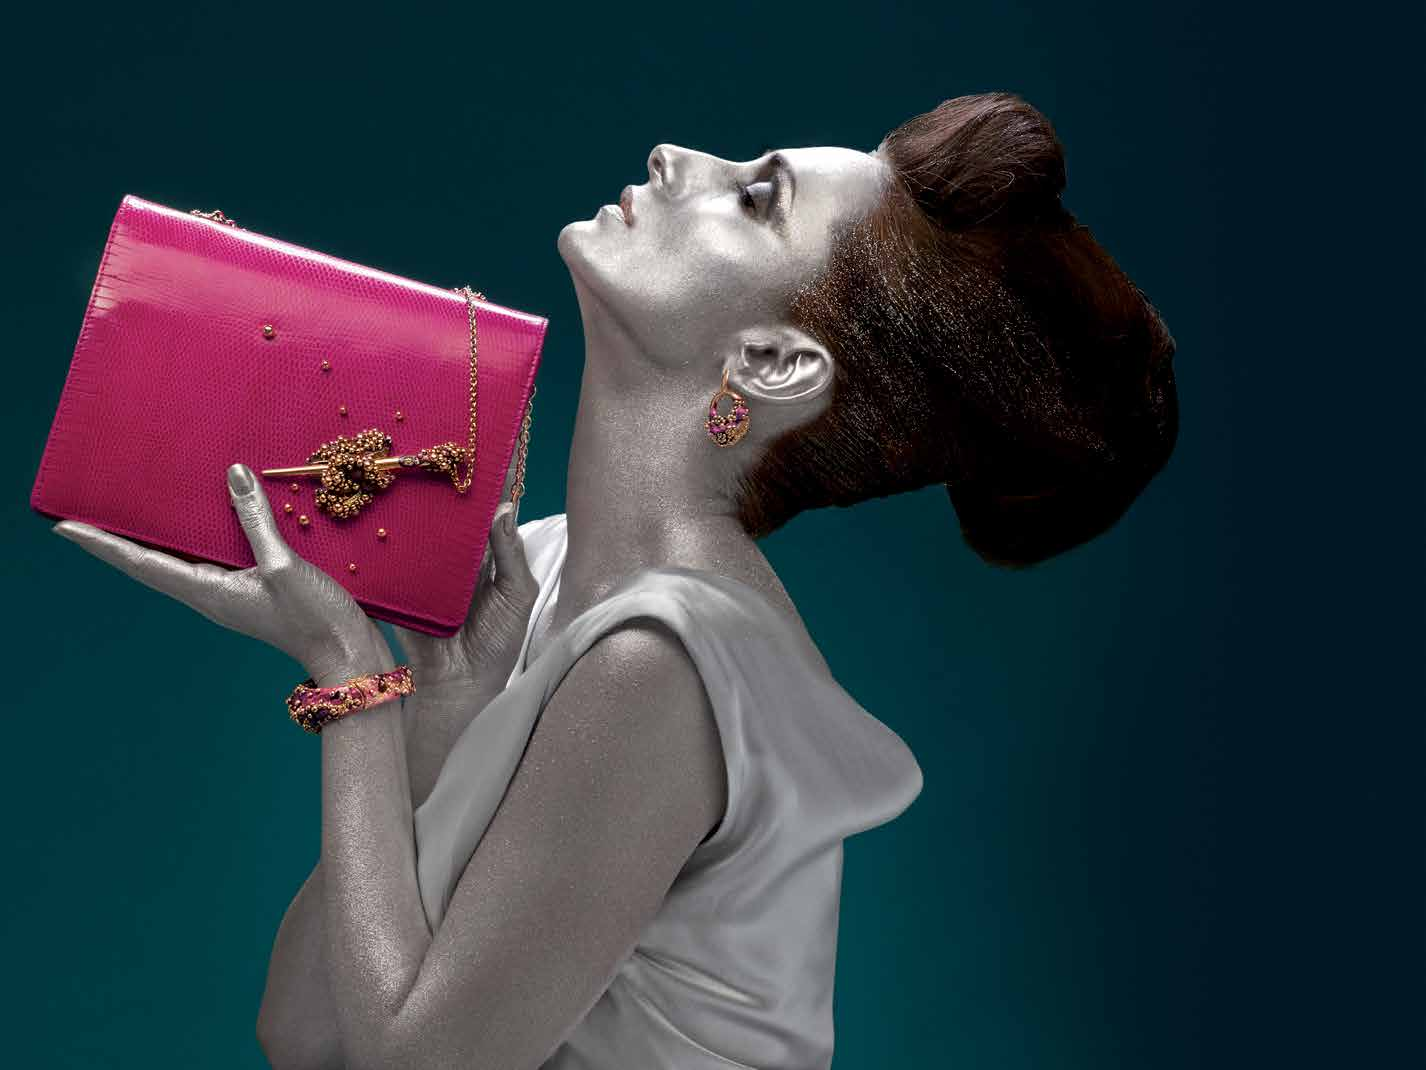 UNIVERSO borsa modello mindy in iguana fucsia certificata, finiture in argento rosé 925 con smalto bracciale e orecchino in argento rosé 925 con smalto mindy bag in